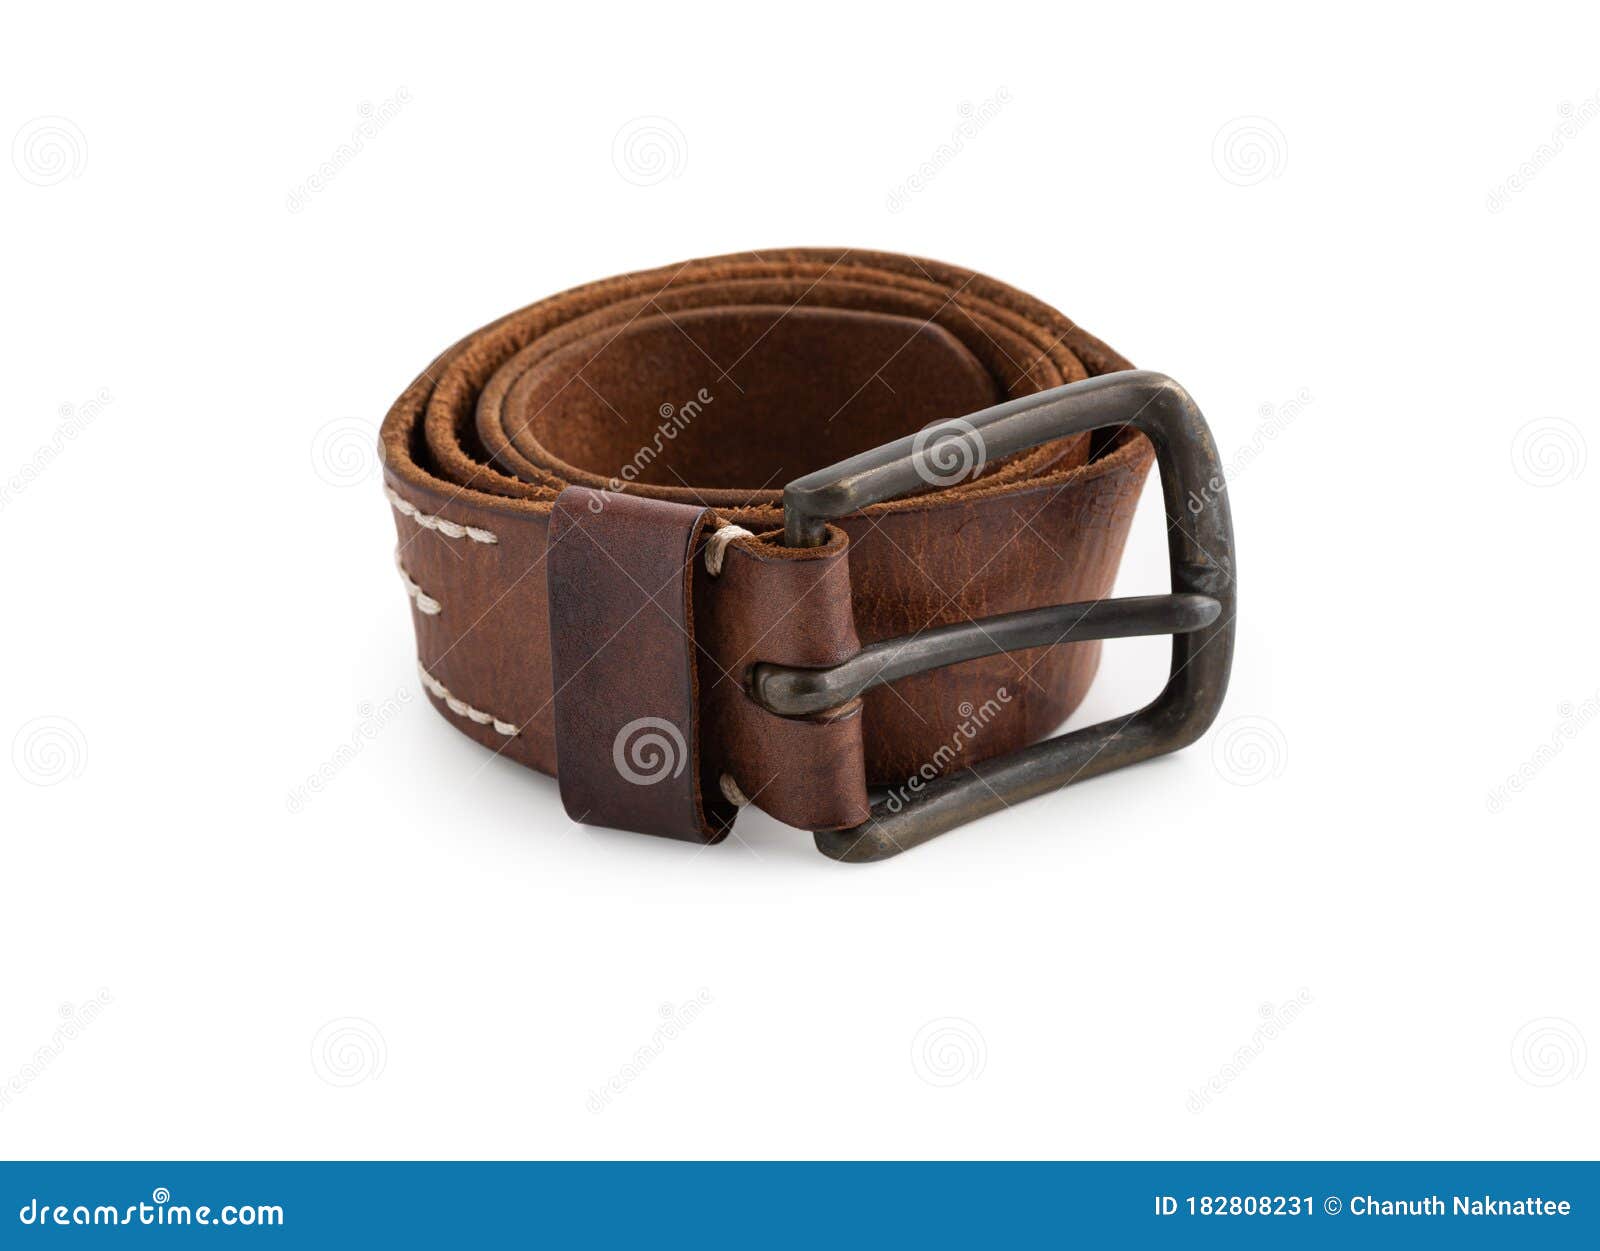 Vintage Leather Belt on Isolated White Background Stock Image - Image ...